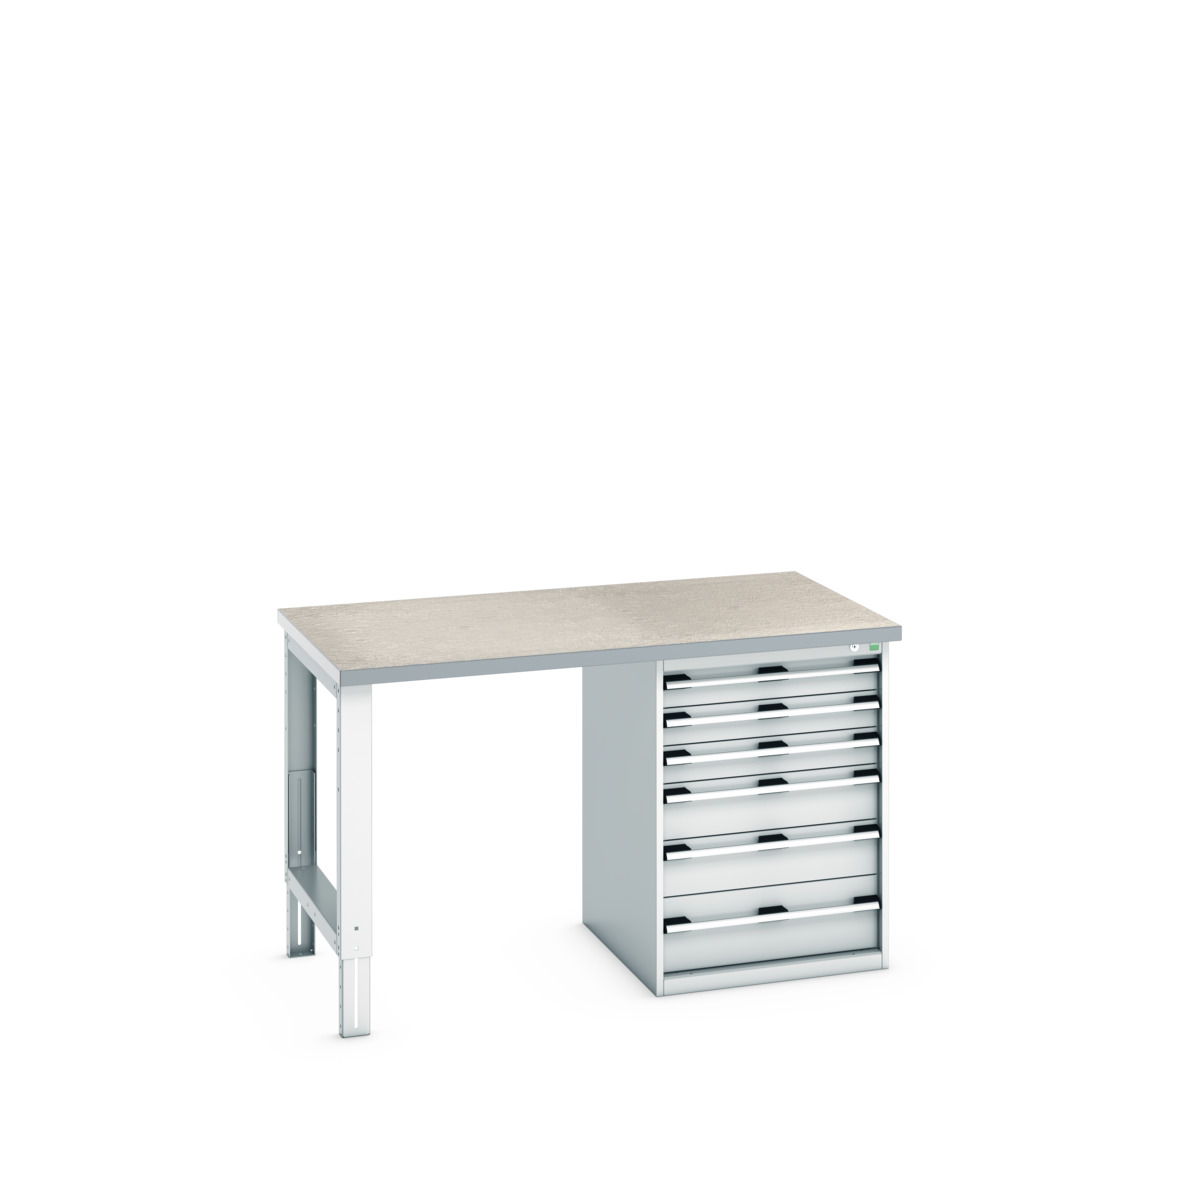 41004118.16V - cubio pedestal bench (lino)